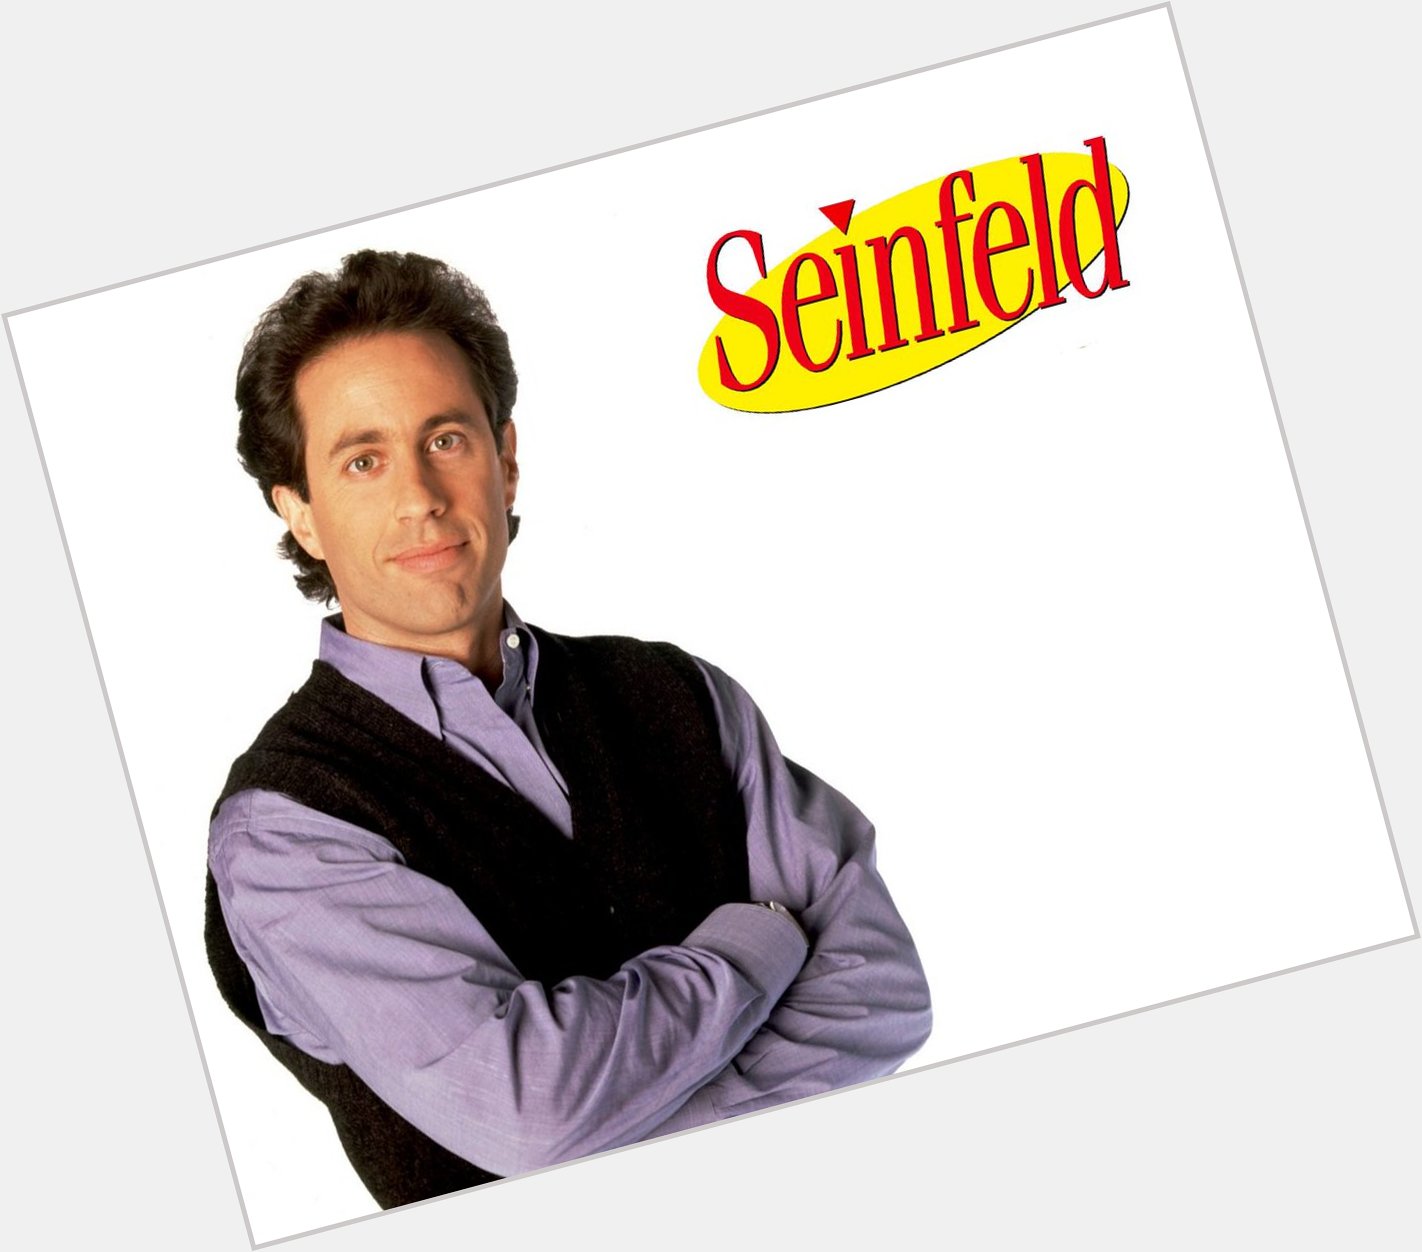 Jerry Seinfeld bugün 63 ya  nda! Nice uzun y llara!
Happy birthday 